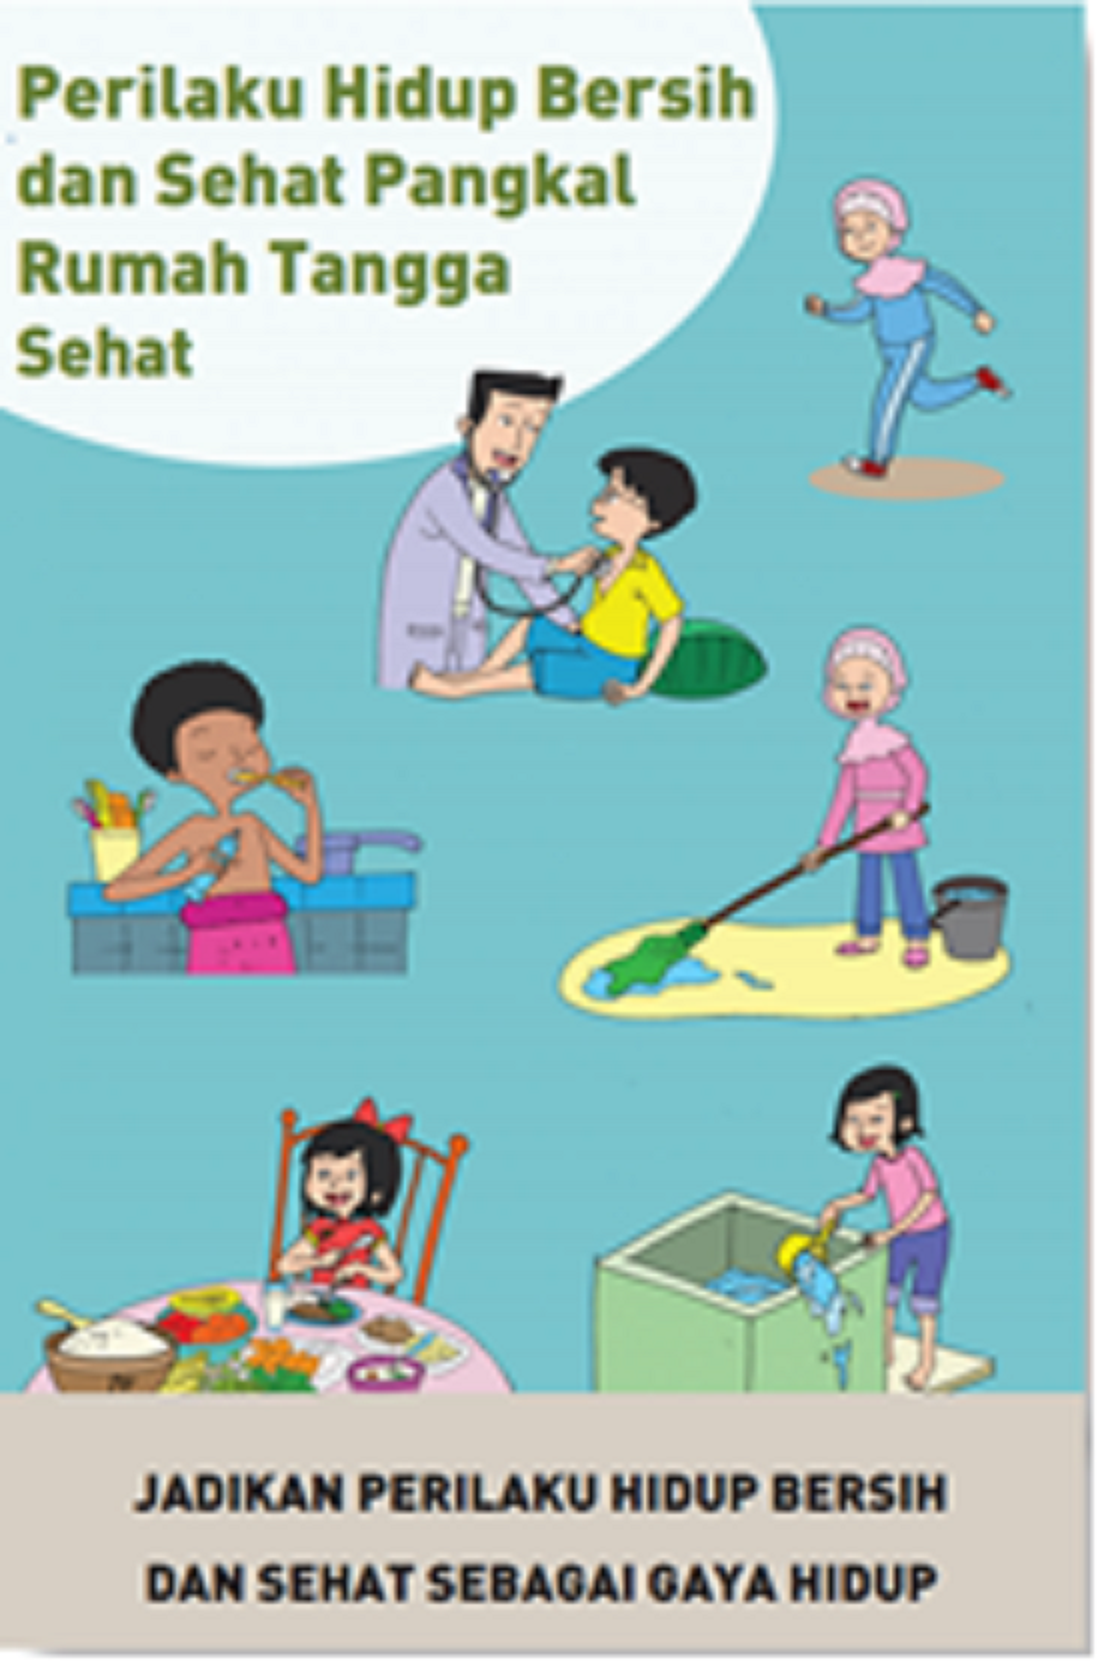 Poster Perilaku Hidup Bersih